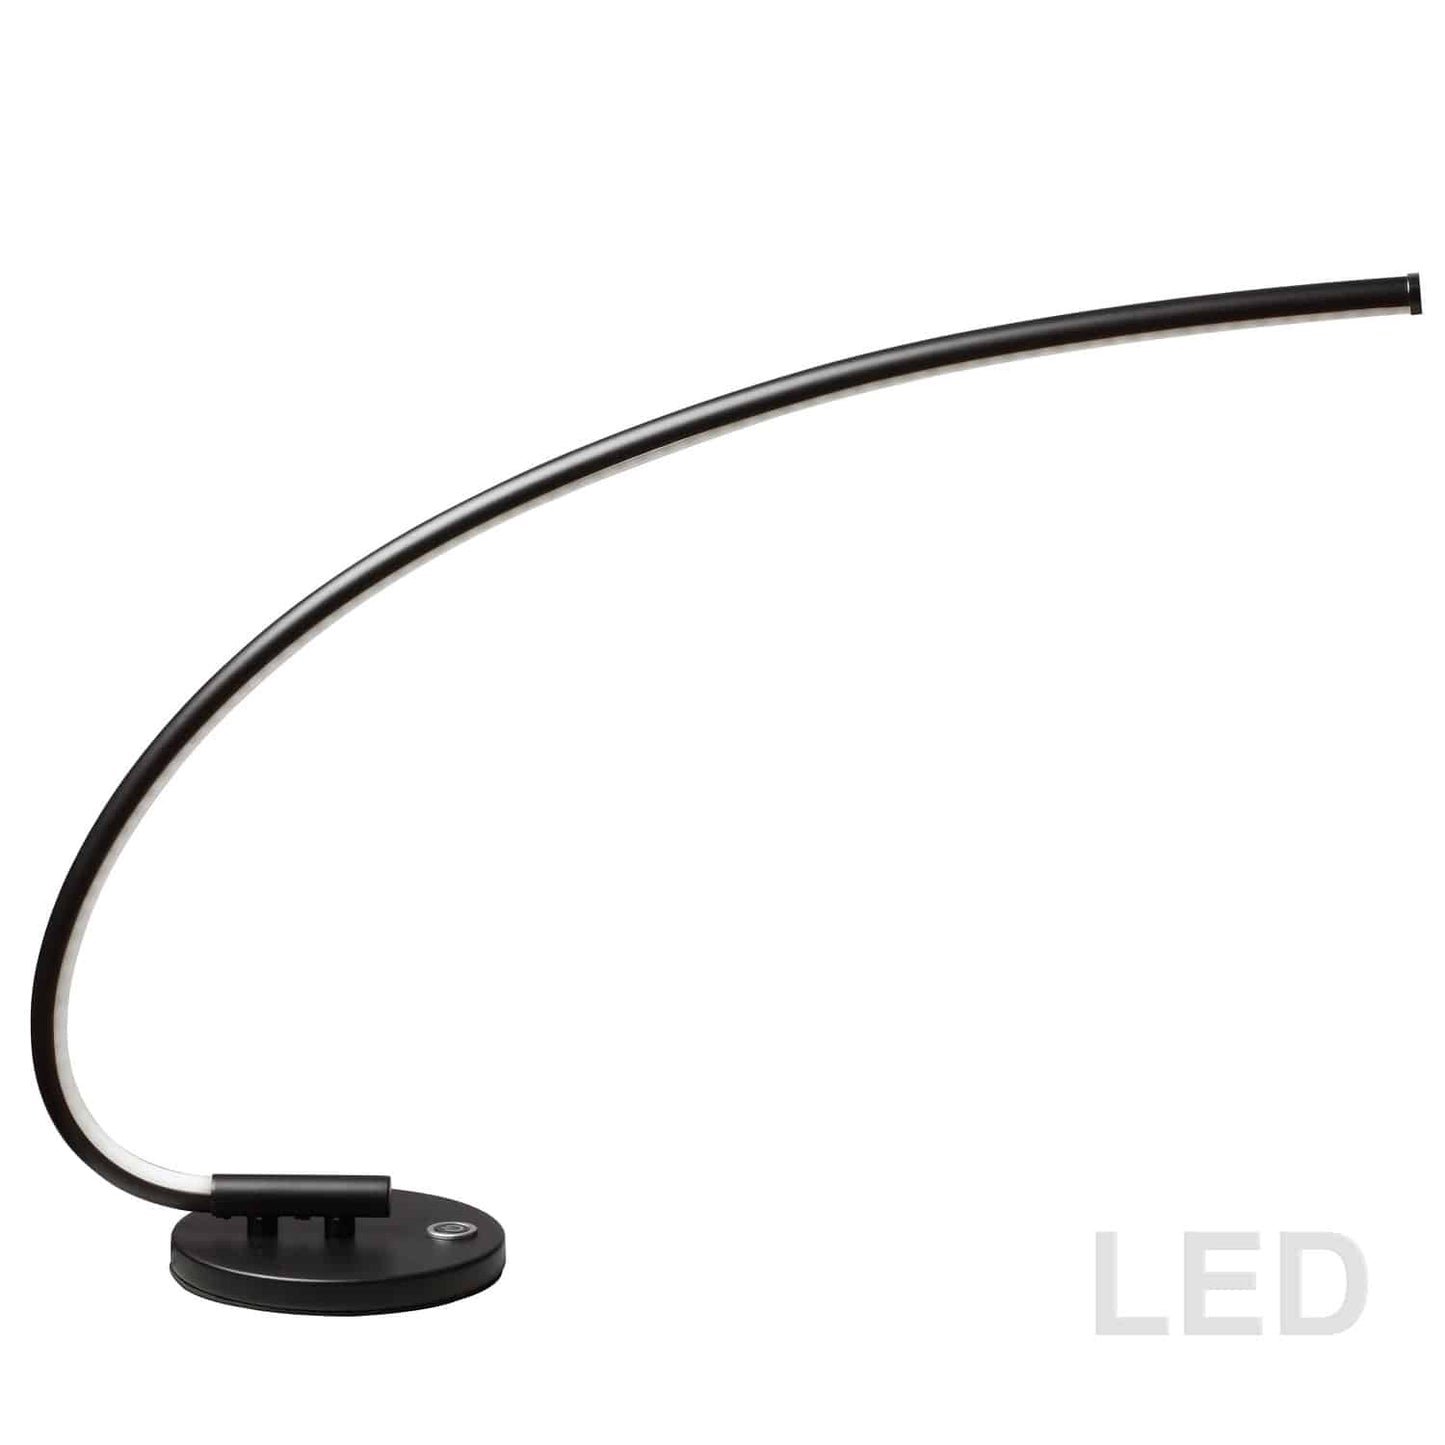 Dainolite 322-LEDT-BK LED Table Lamp, 18 Watt, Black Finish